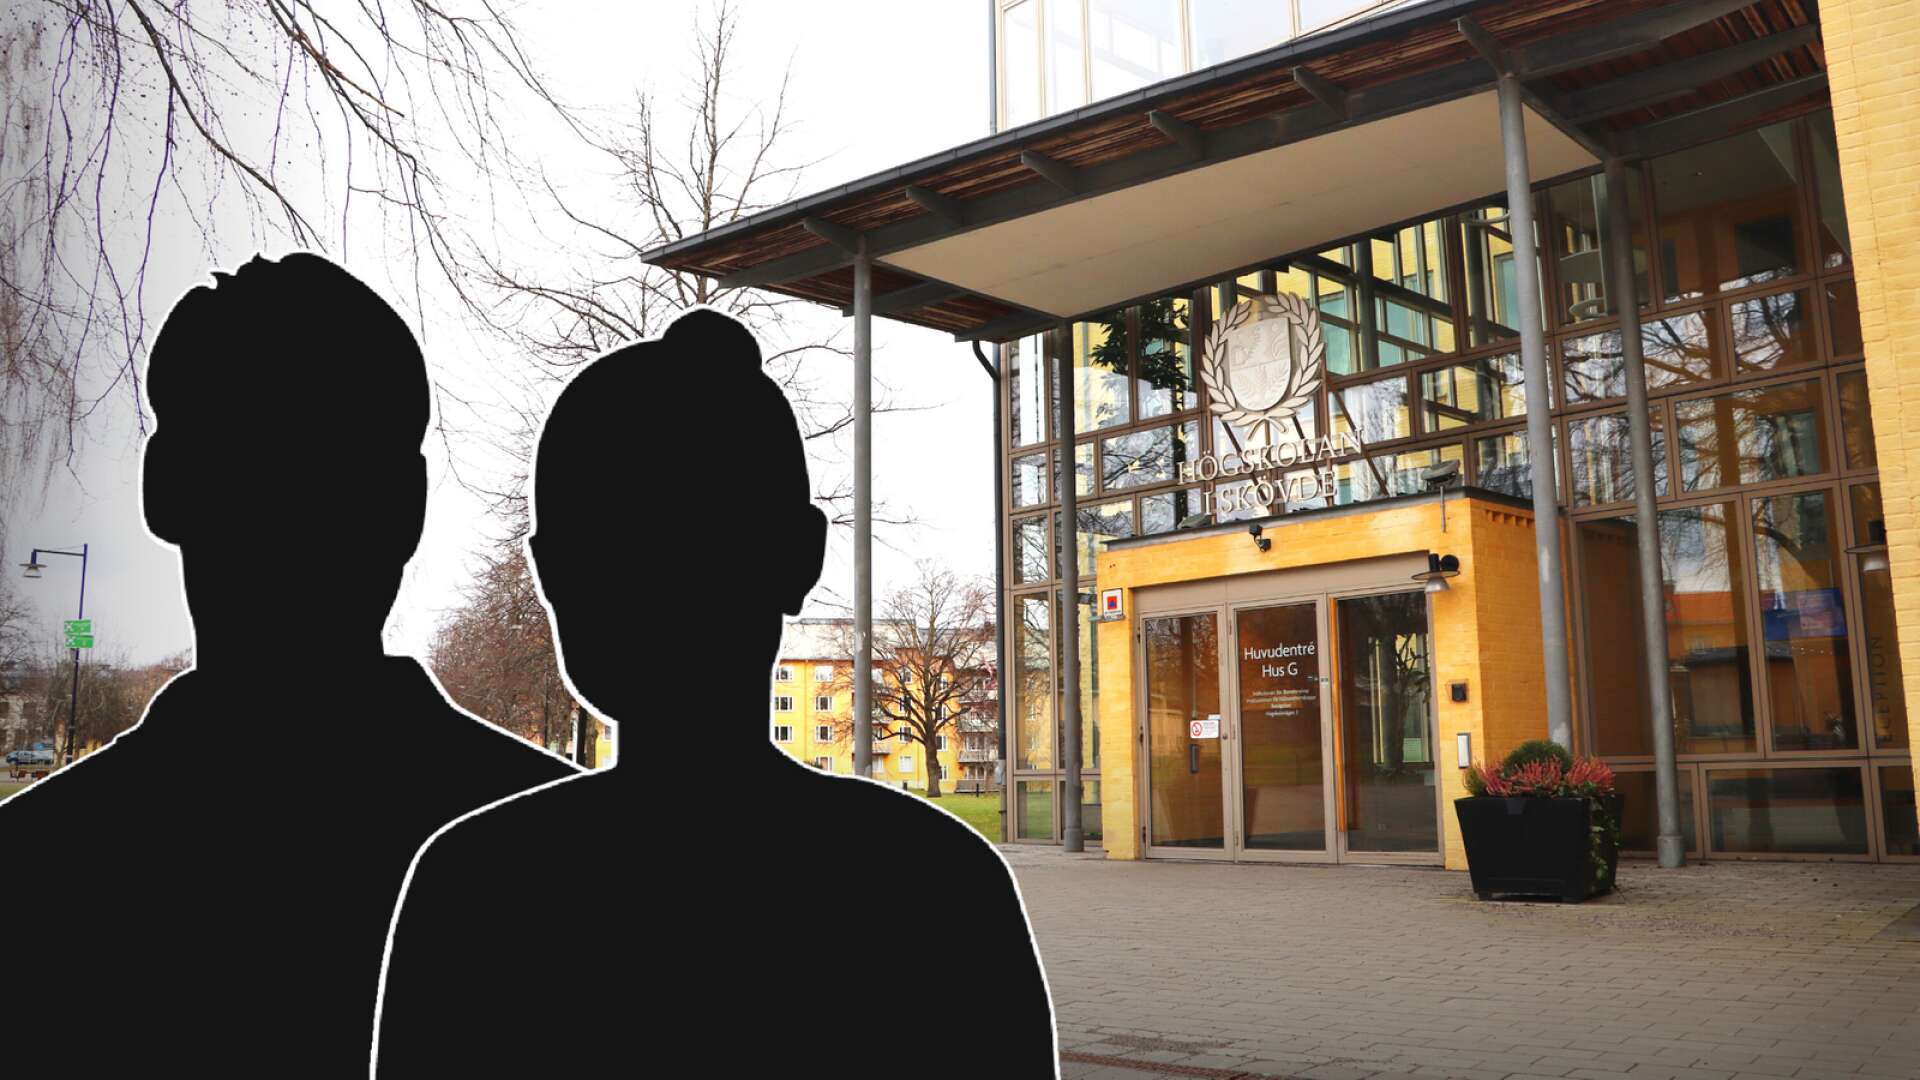 Totalt två studenter har portats från Högskolan i Skövde efter disciplinnämndens senaste sammanträde.